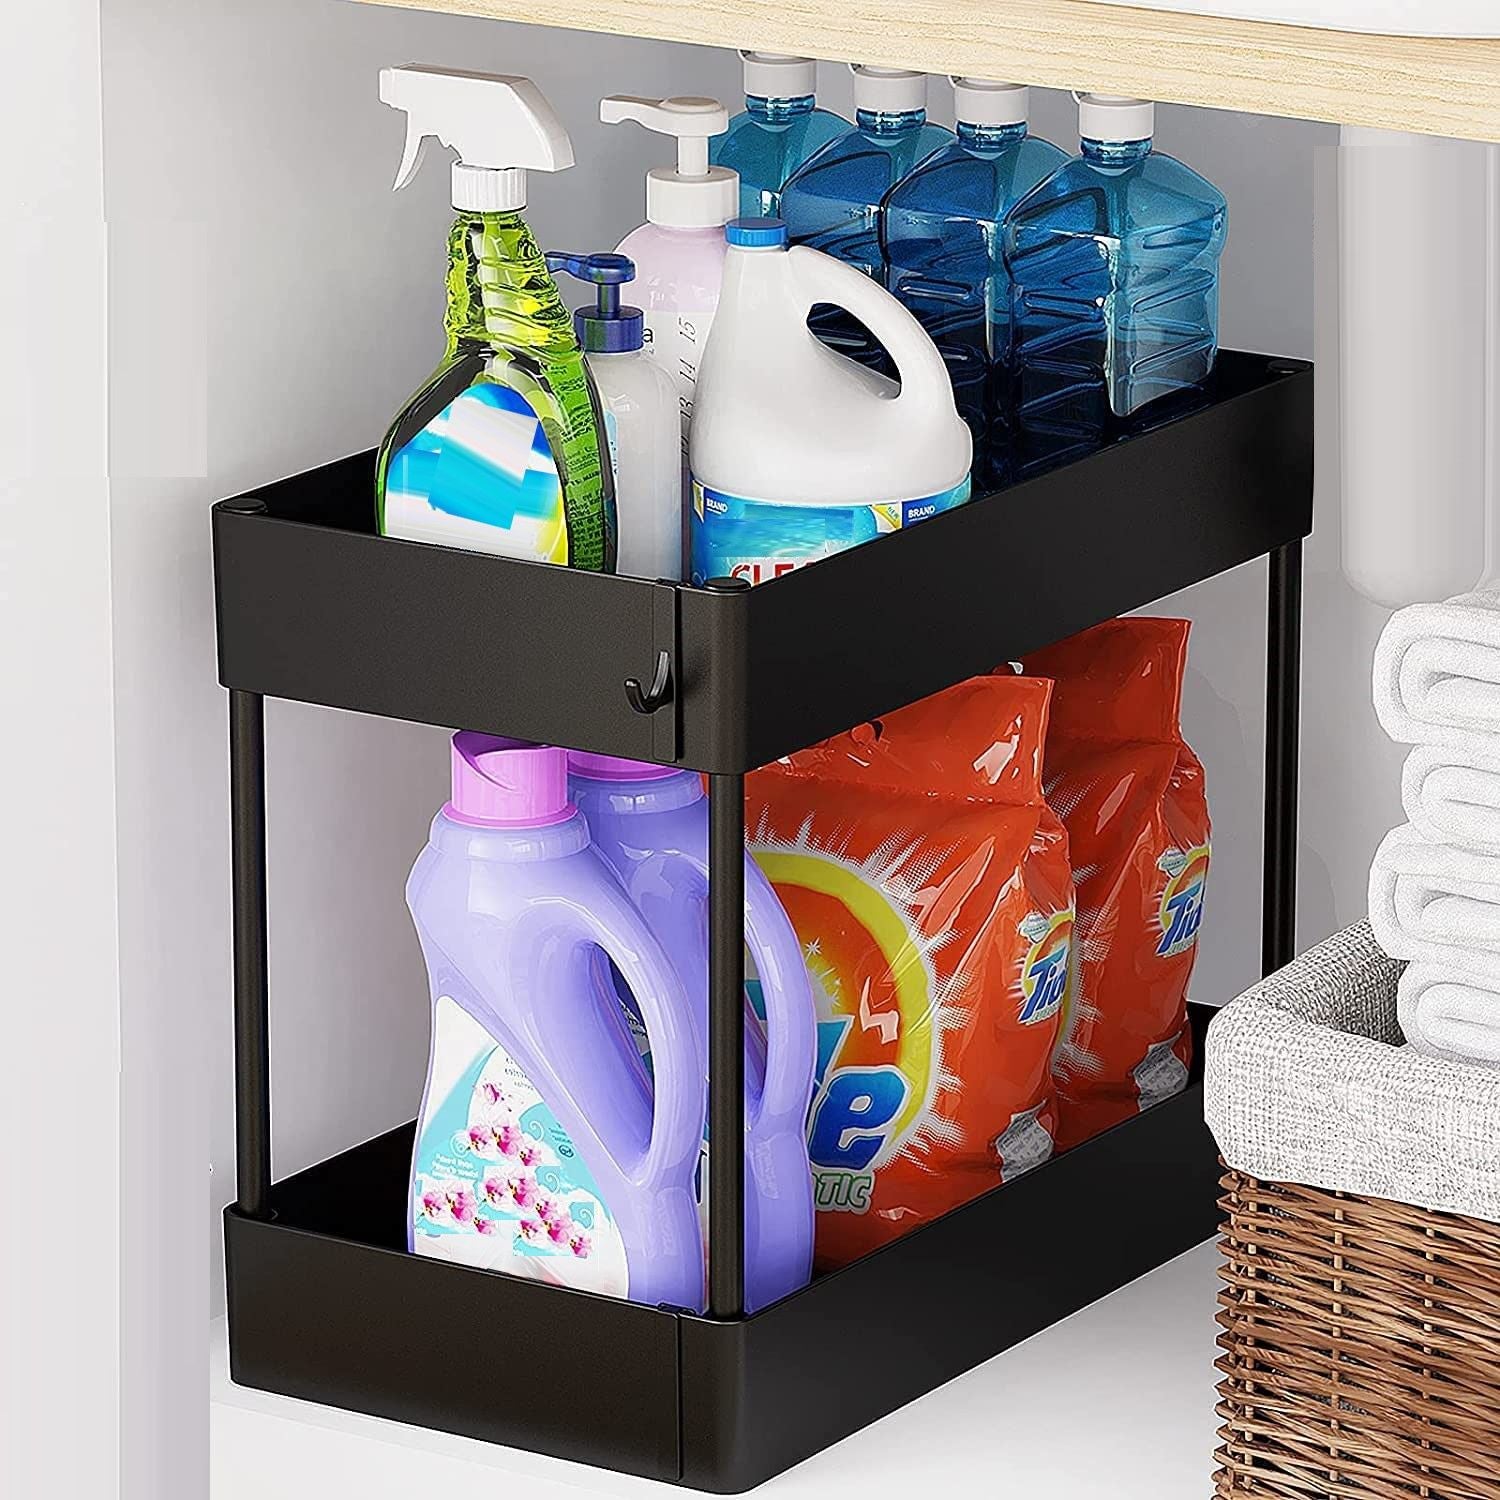 2-tier-multi-purpose-under-sink-organizer-shelf-storage-rack-for-bathroom-and-kitchen